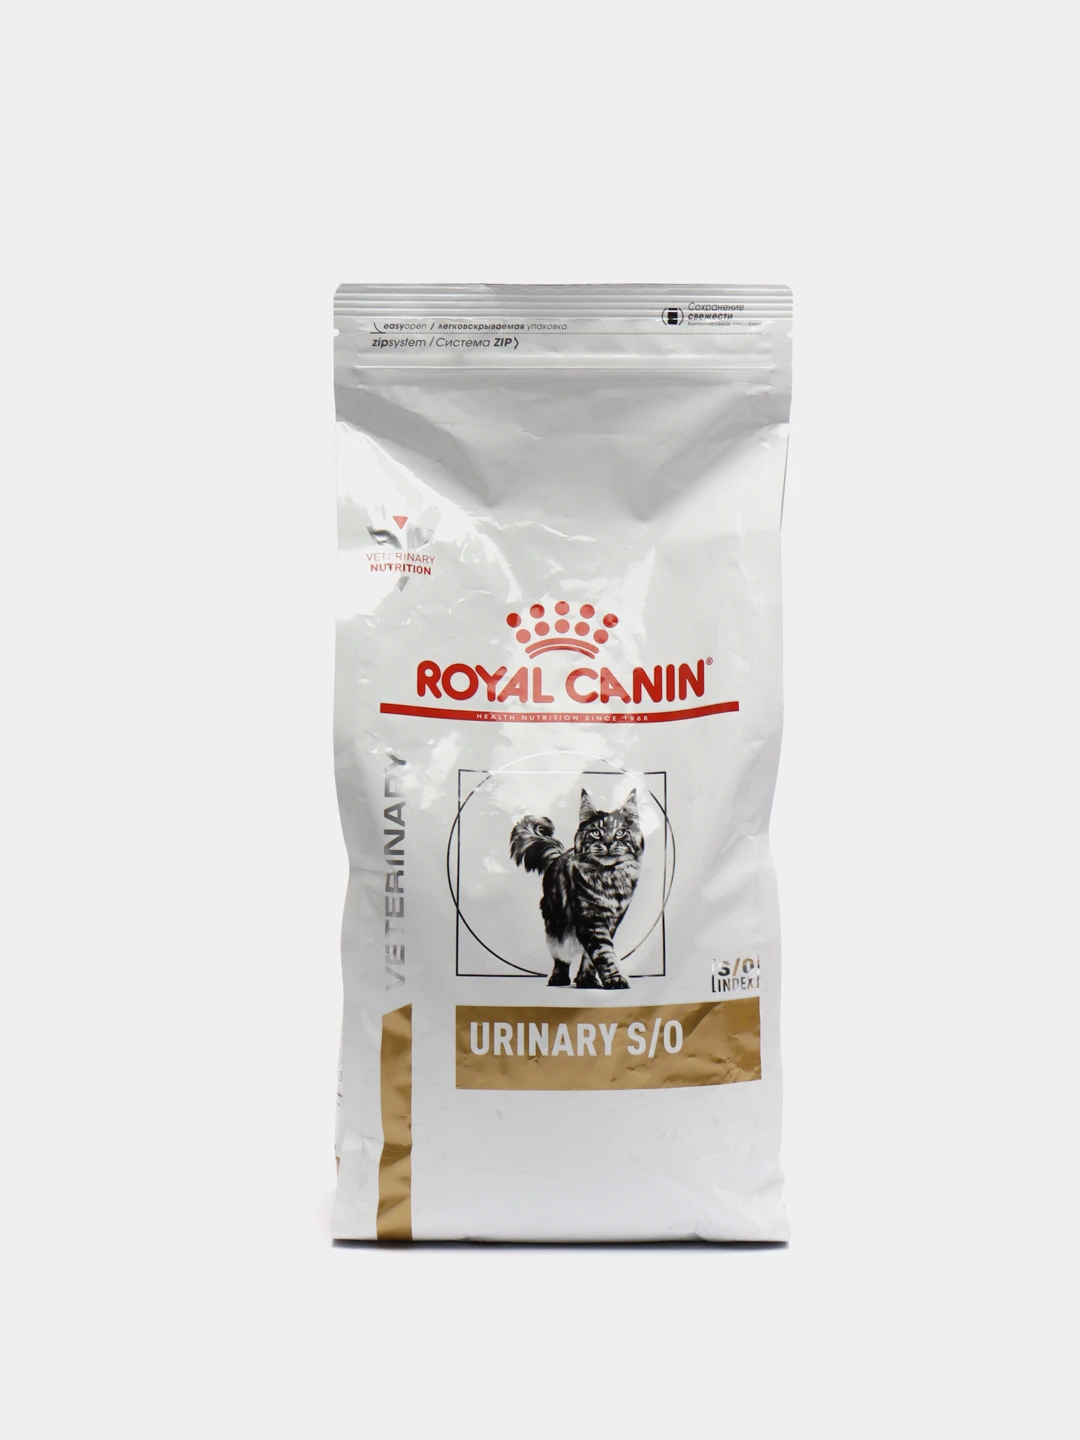 Royal canin urinary для кошек купить